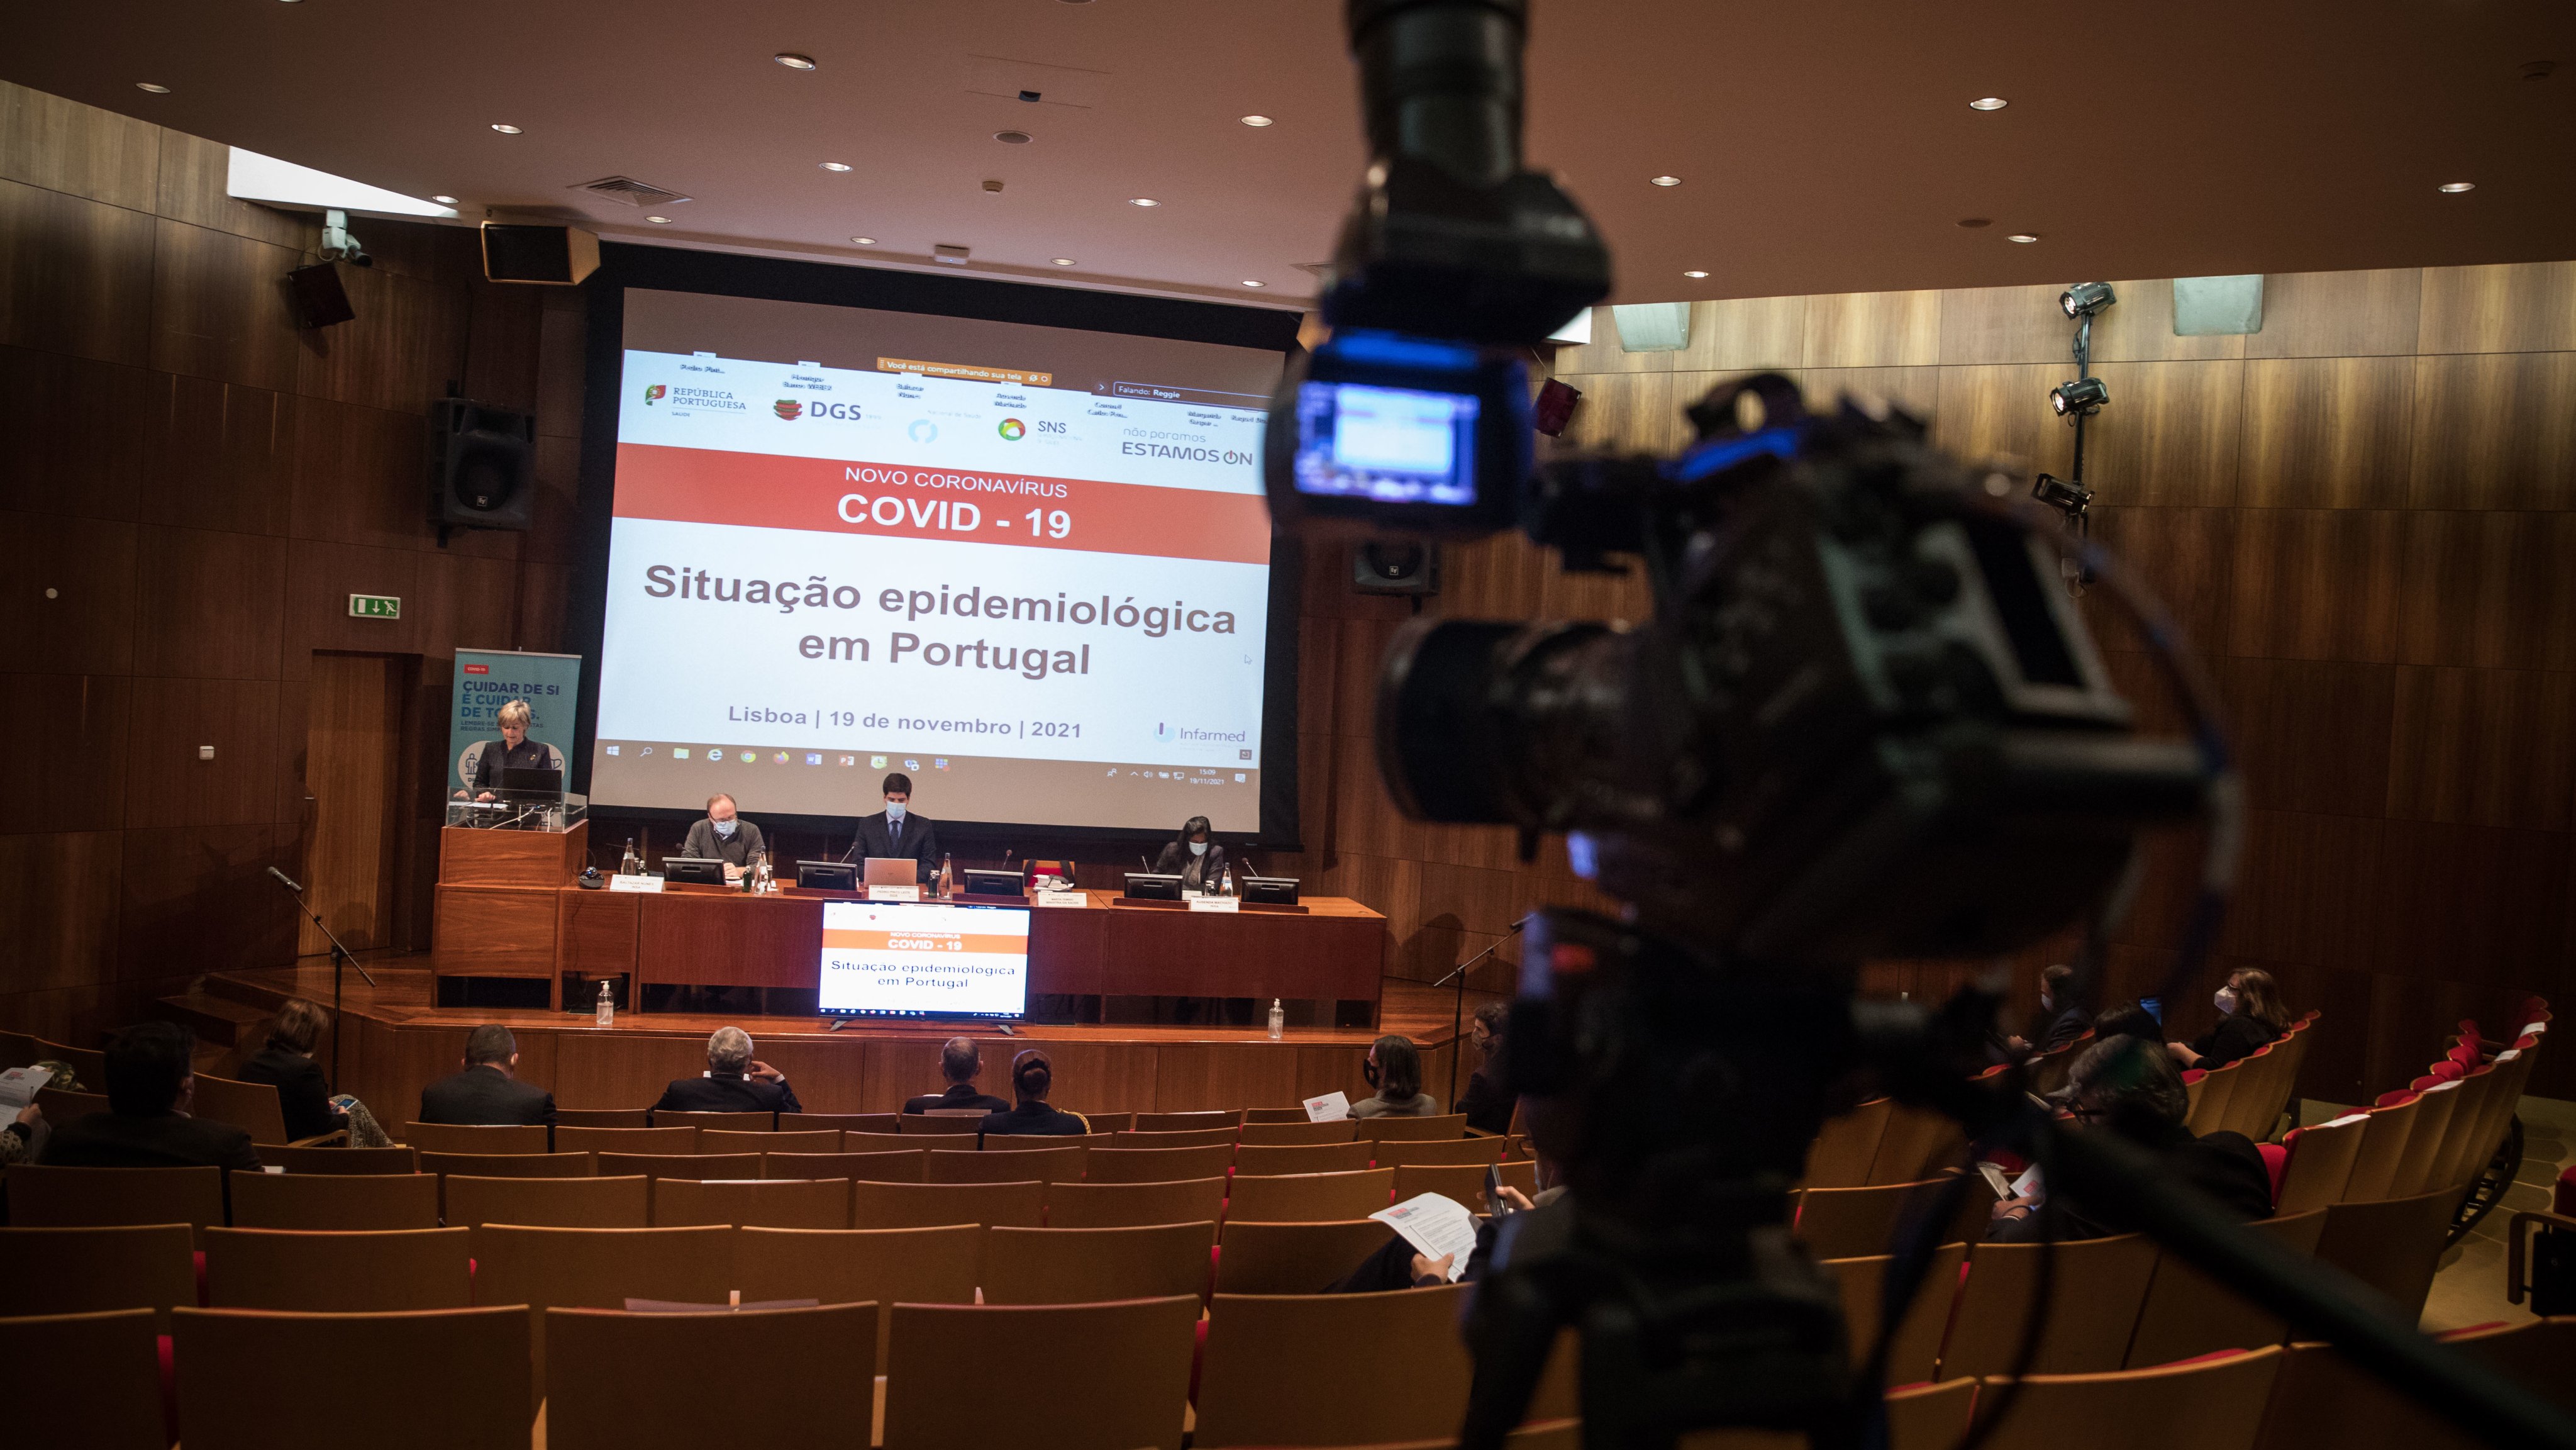 O Presidente da República, Marcelo Rebelo de Sousa conversa com primeiro-ministro, António Costa na sessão sobre a evolução da Covid-19 em Portugal no Infarmed, Lisboa, 19 de novembro de 2021. JOÃO PORFÍRIO/OBSERVADOR